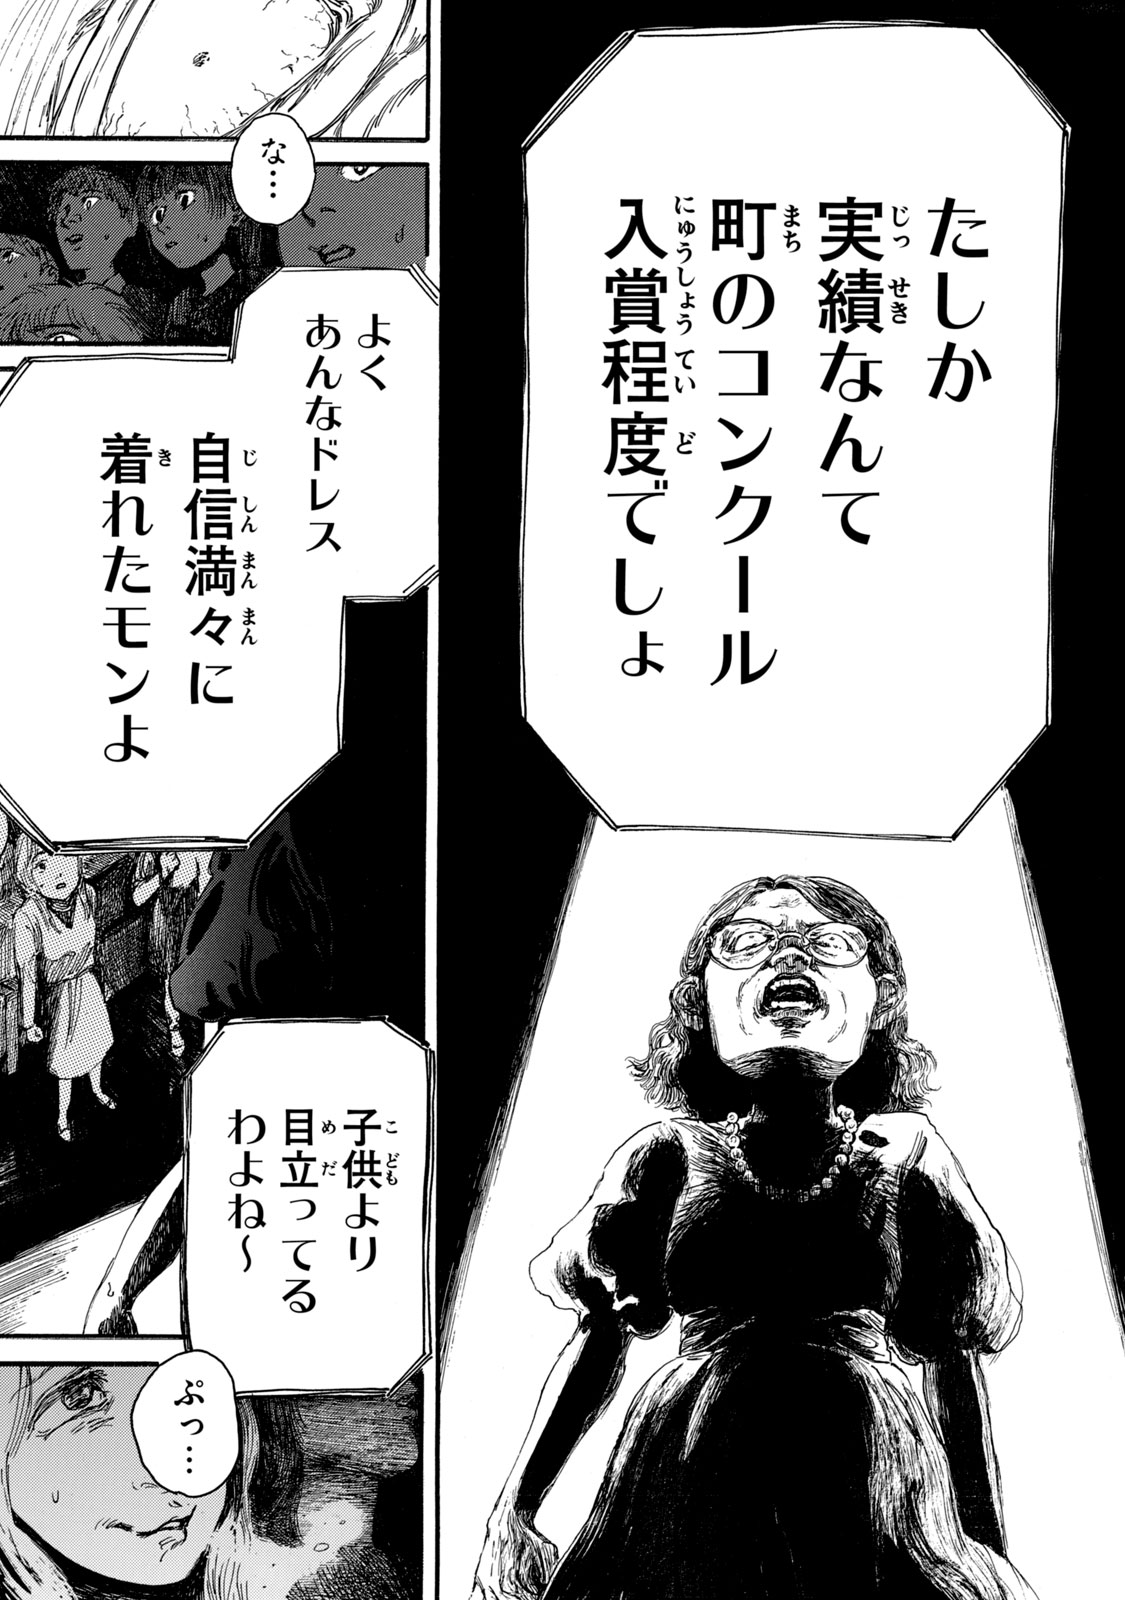 Watashi no Hara no Naka no Bakemono - Chapter 13 - Page 5